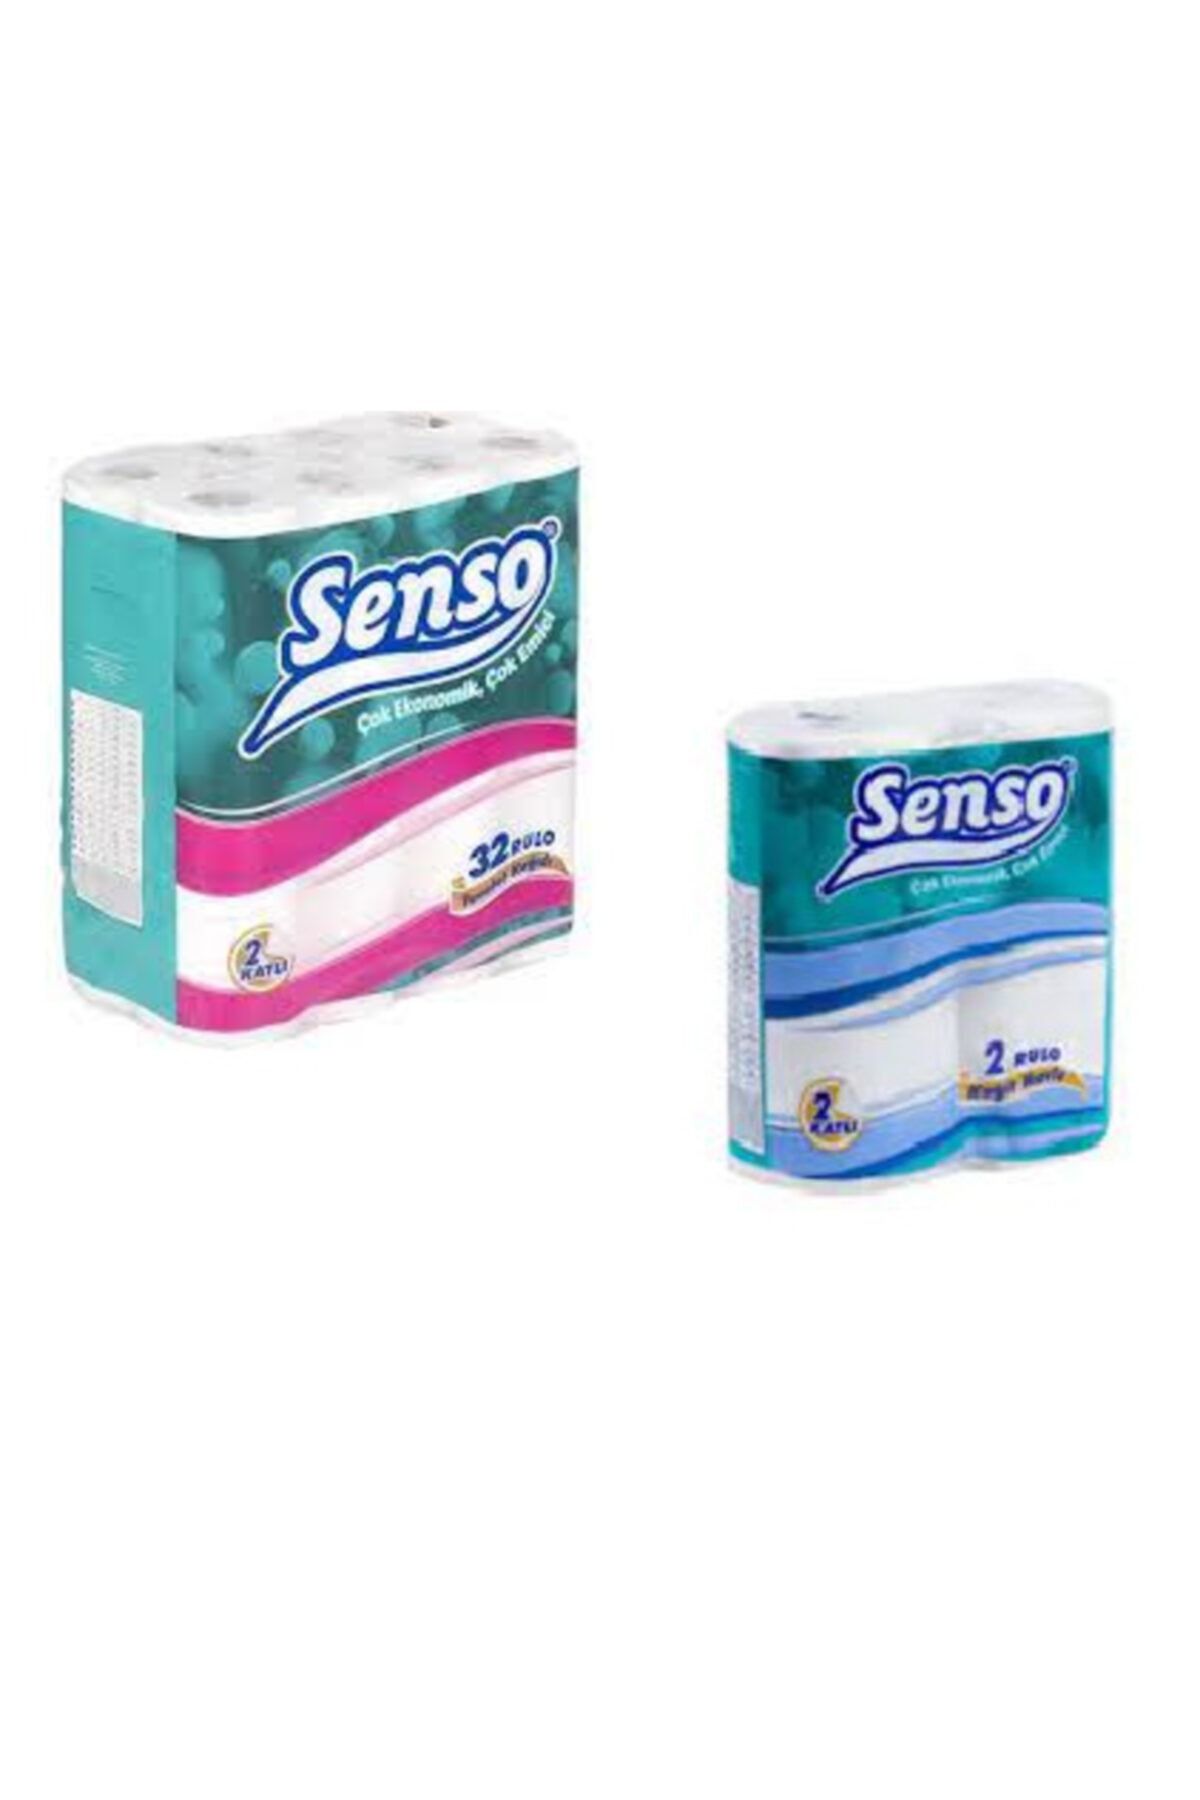 Senso 32li Tuvalet Kağıdı + 2 Li Havlu Kağıt